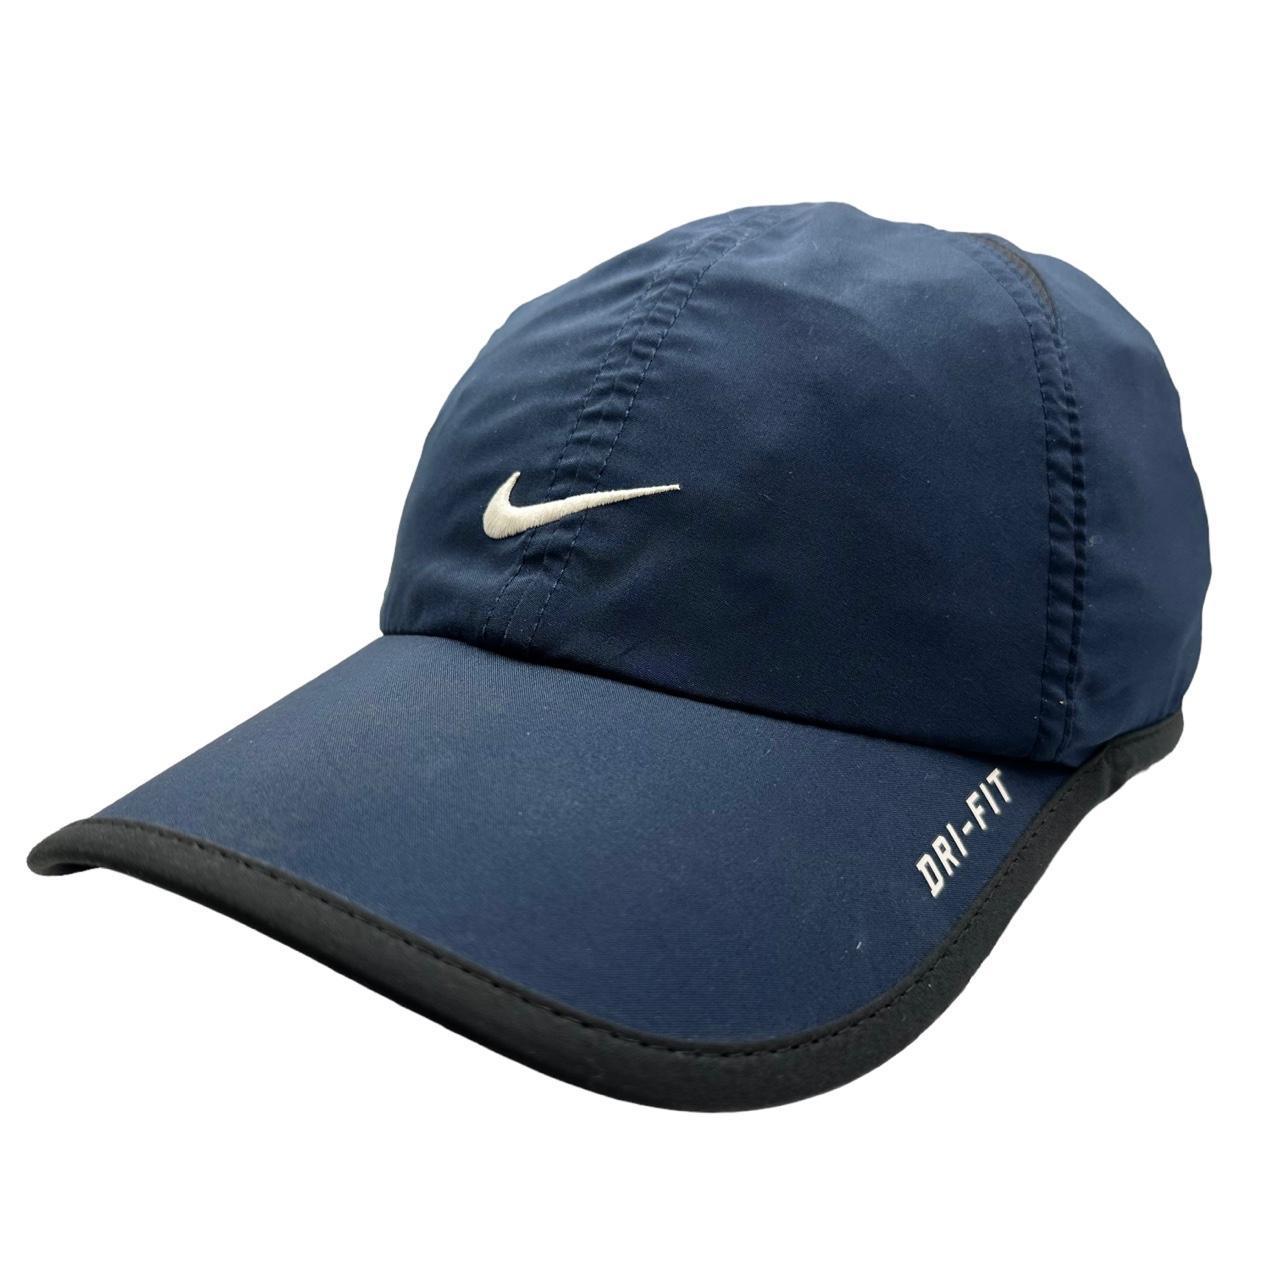 Vintage Nike Hat - Known Source